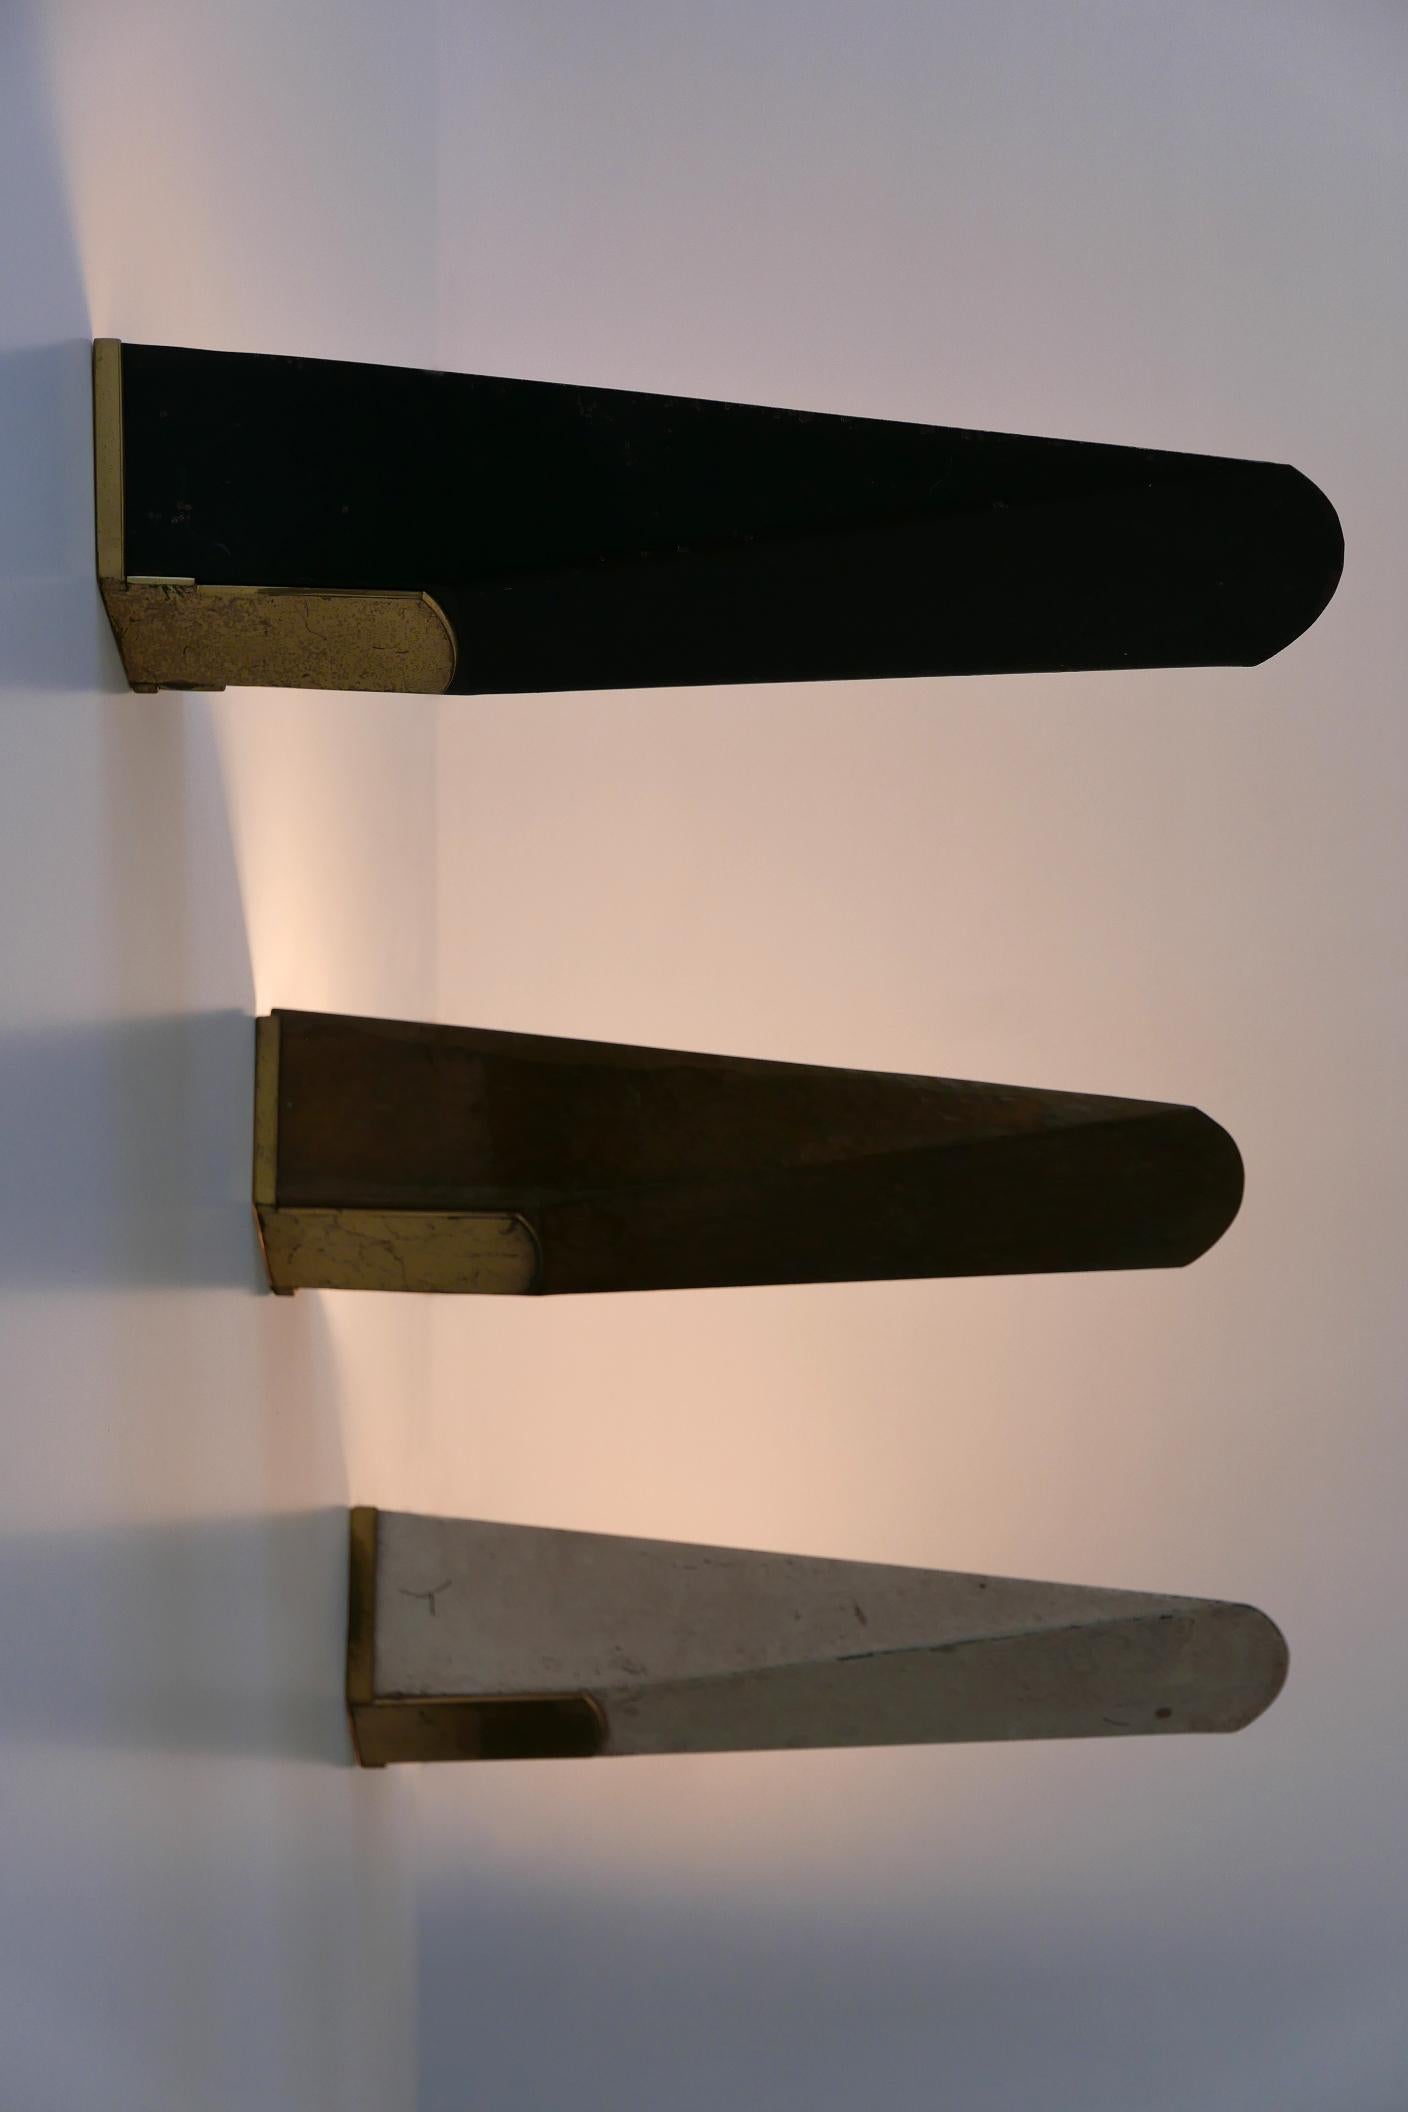 Satz von drei großen und eleganten Mid-Century Modern Wandlampen oder Wandleuchter. Entworfen und hergestellt wahrscheinlich in den 1950er Jahren in Deutschland. 

Ausgeführt in Metall/Messing, benötigt jede Lampe 1 x E27 / E26 Edison-Schraube fit